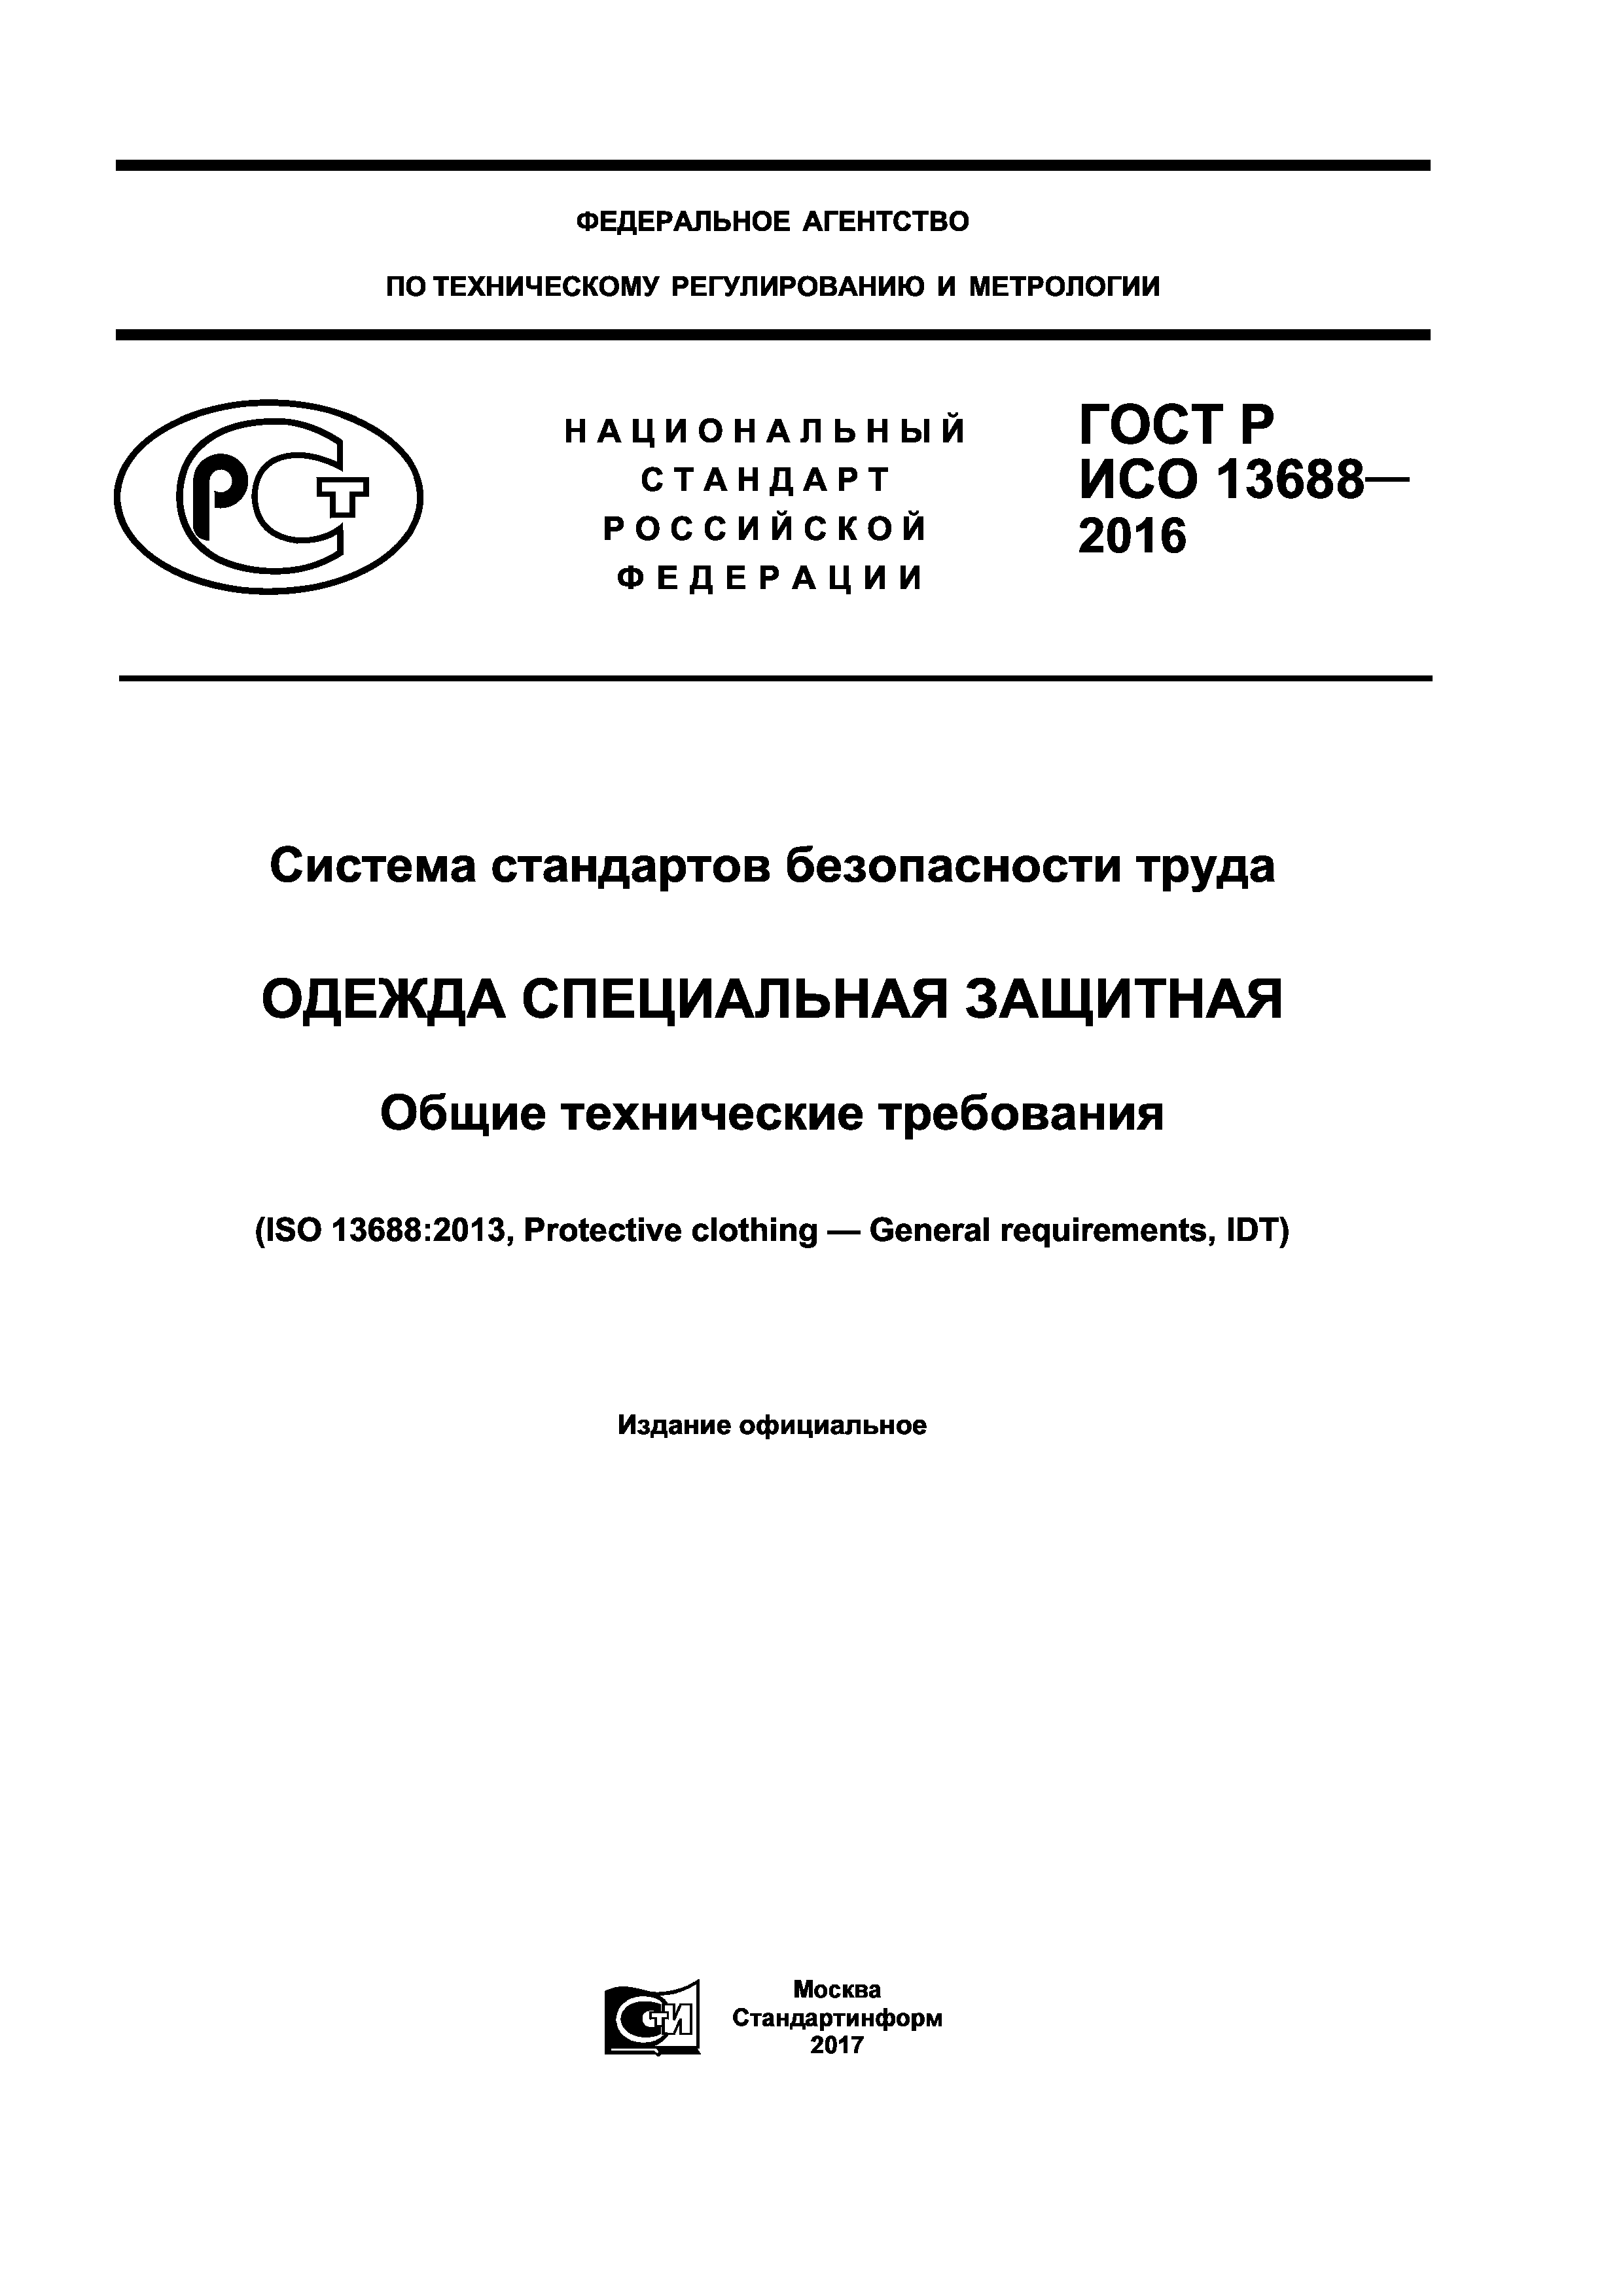 ГОСТ Р ИСО 13688-2016